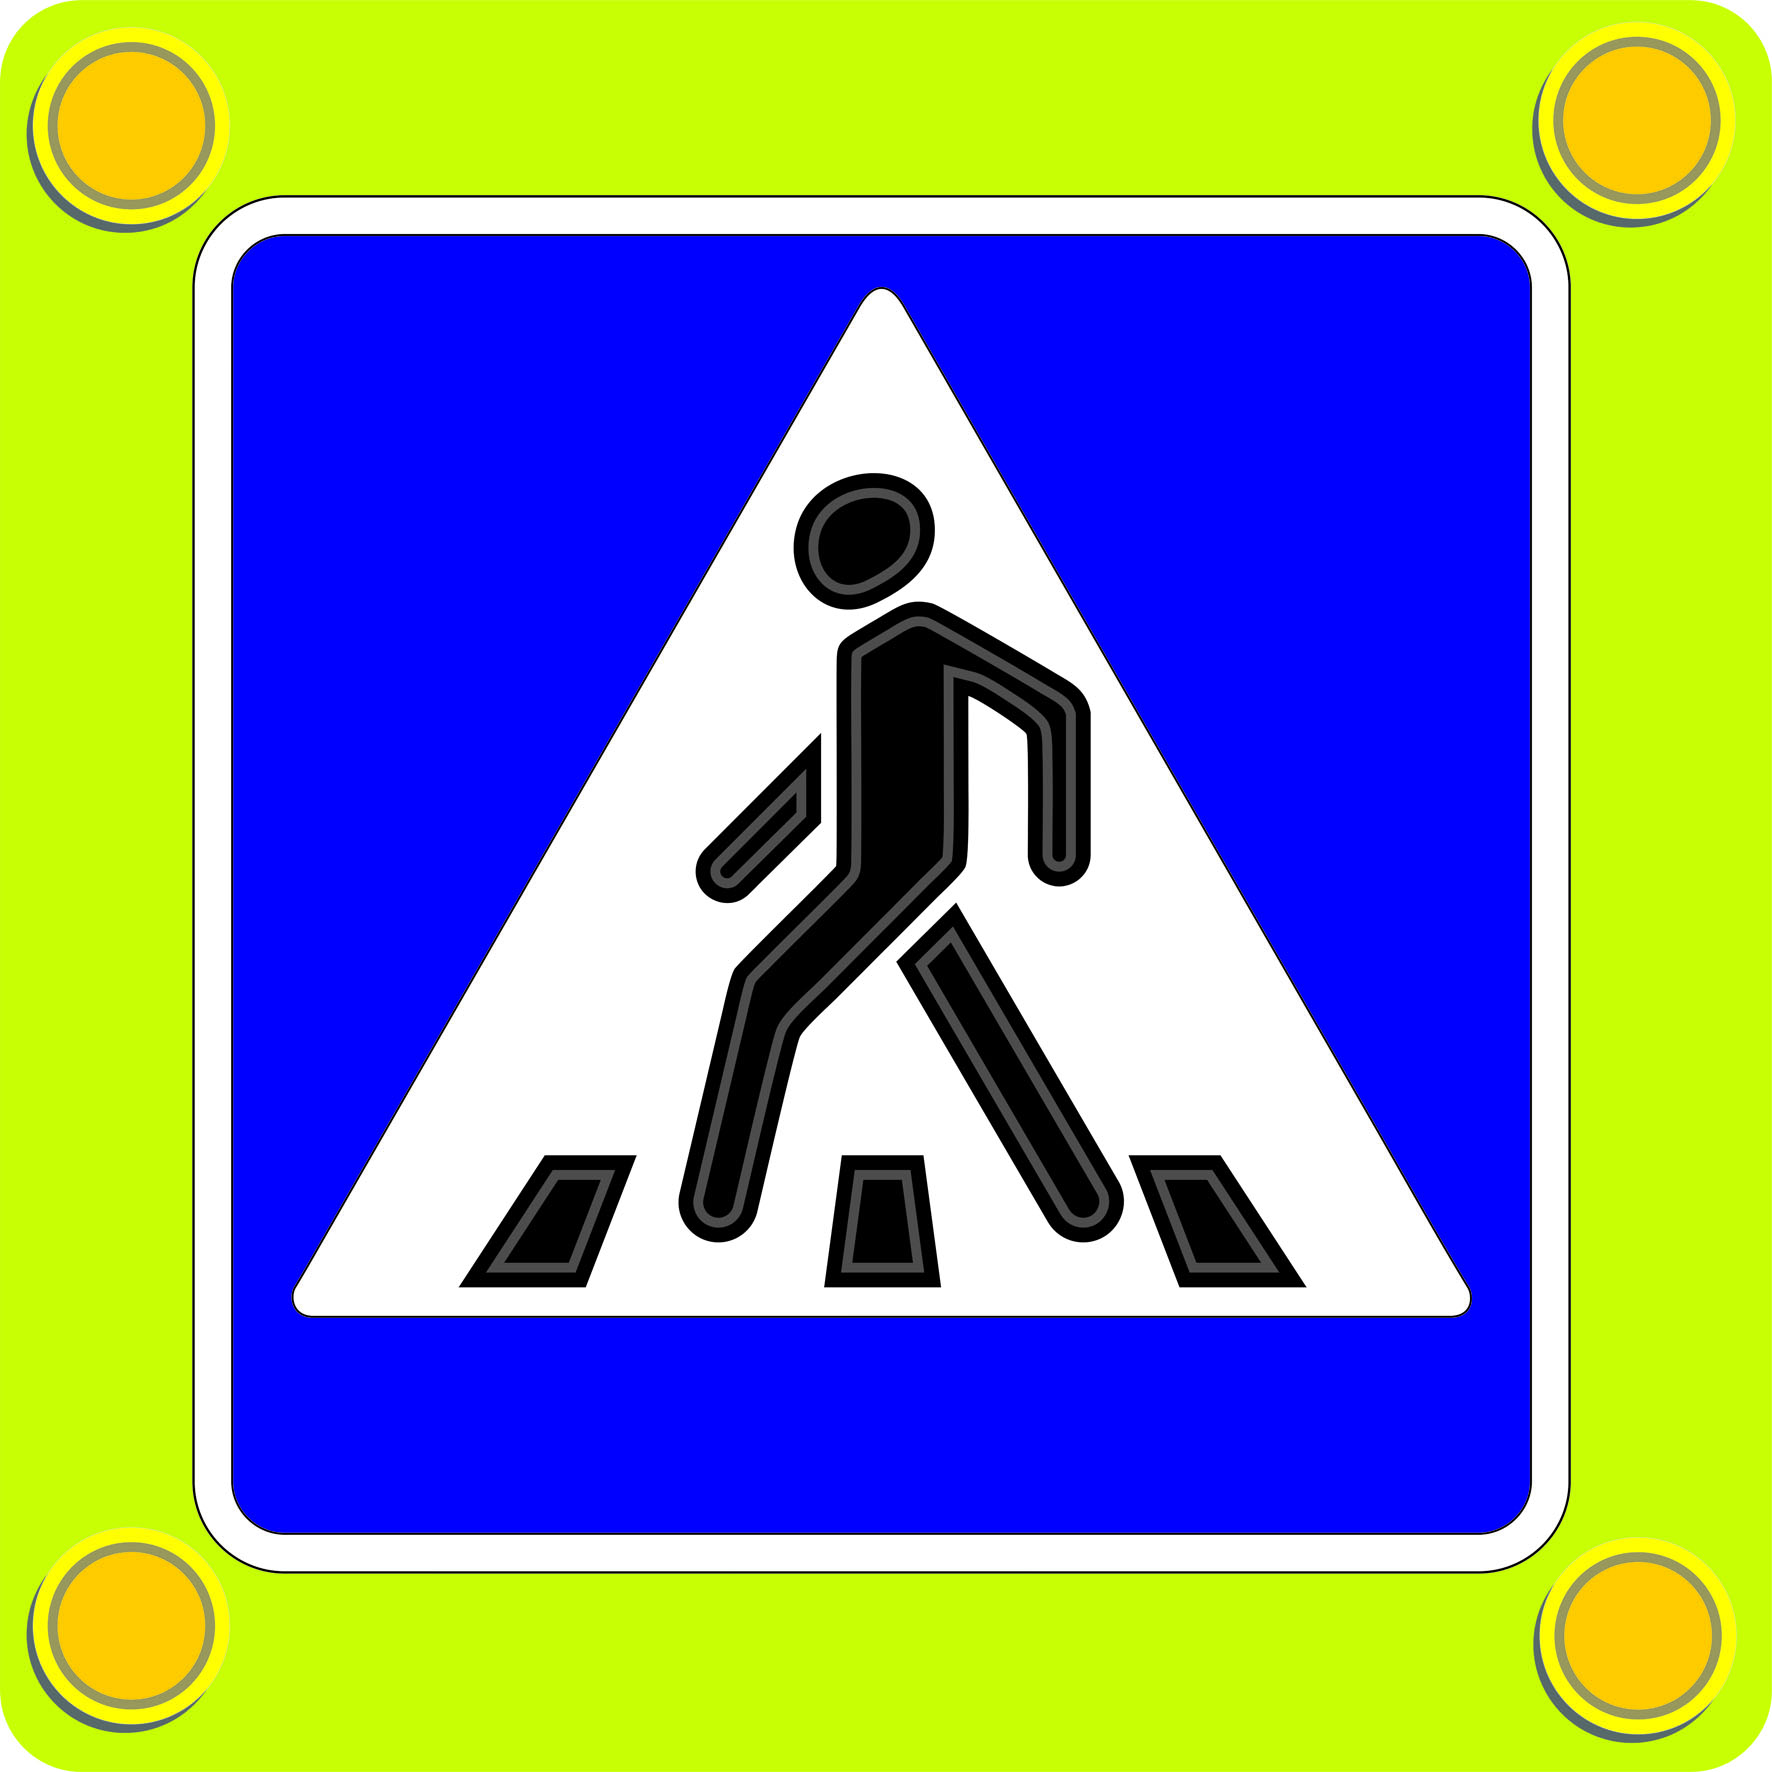 Картинку знак дорожного перехода. Пешеходный переход знак 5.19.1. Знак пешеходный переход 5.19.2. Светодиодный знак 5.19.1. Знак 5.19.1 и 5.19.2 на желтом фоне.